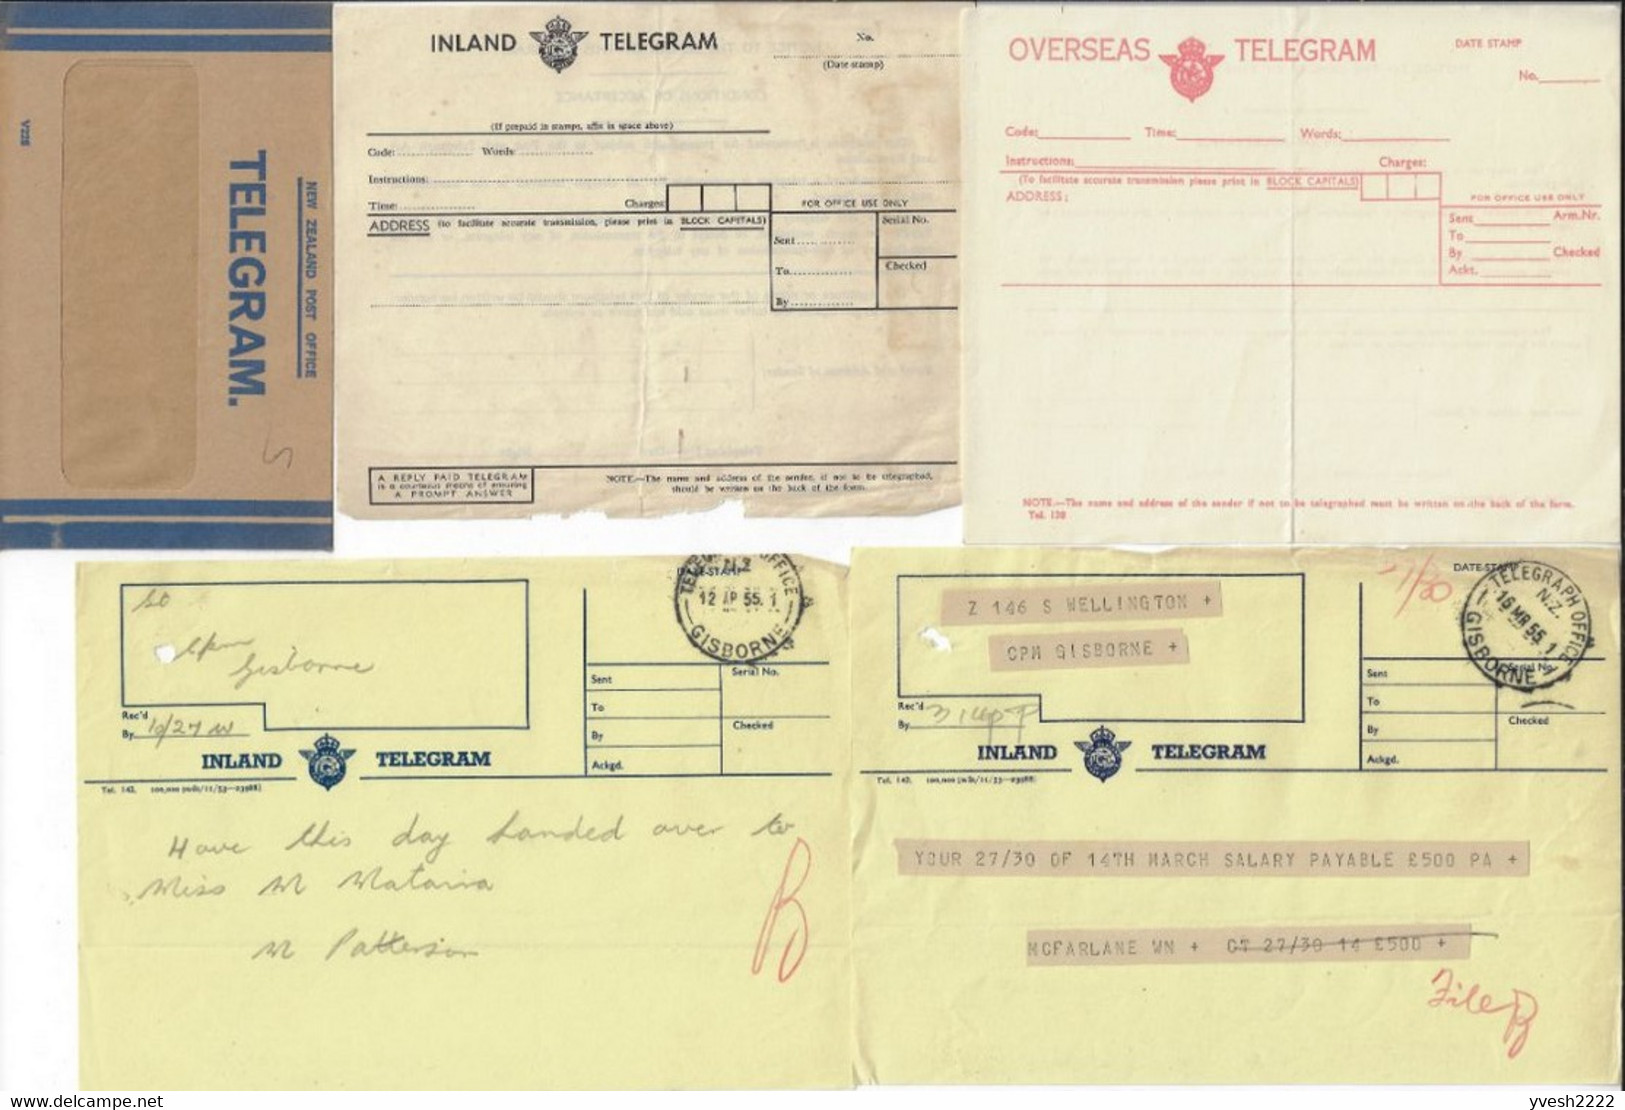 Nouvelle Zélande. Lot de télégrammes, d'enveloppes de télégrammes et formulaires utilisés par les télégraphes